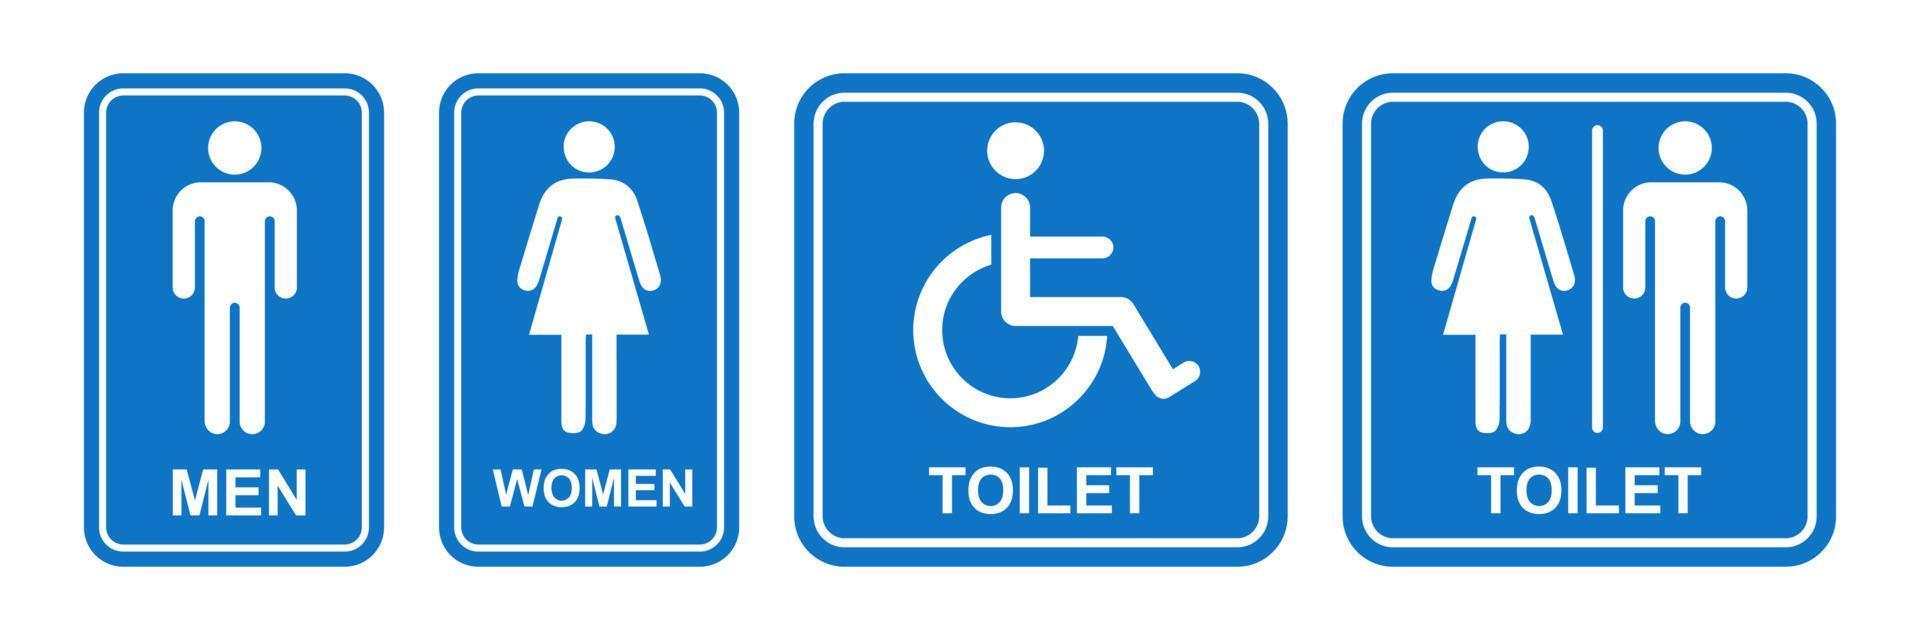 banheiro placa imprimível público placa símbolo homem mulher banheiro simples azul minimalista Projeto ilustração vetor